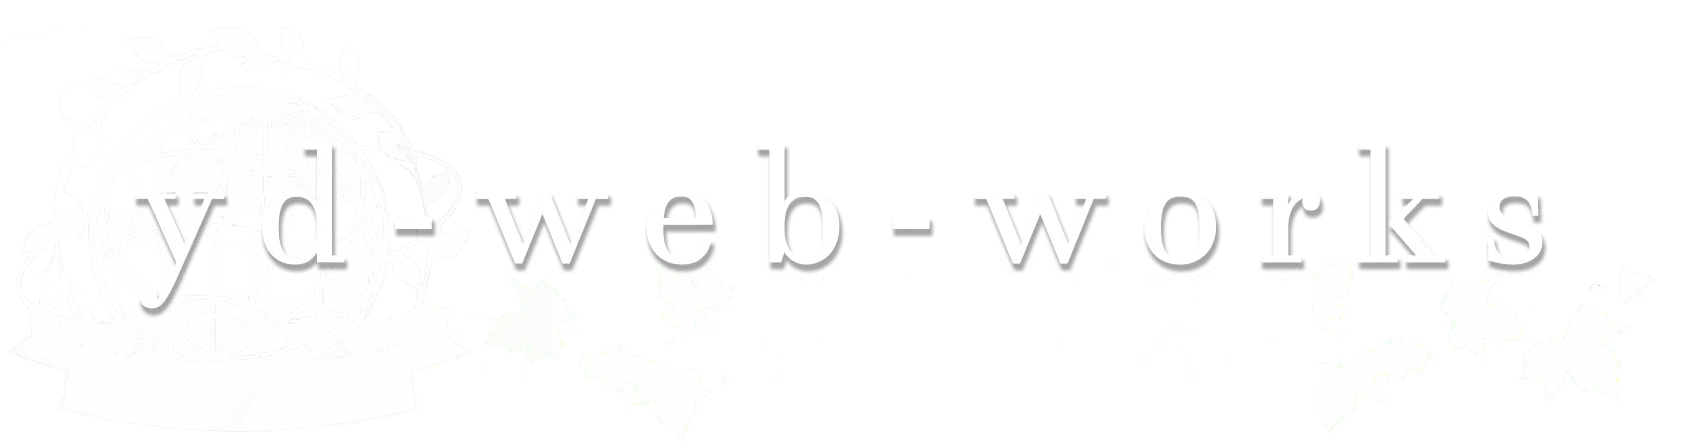 yd-web-works